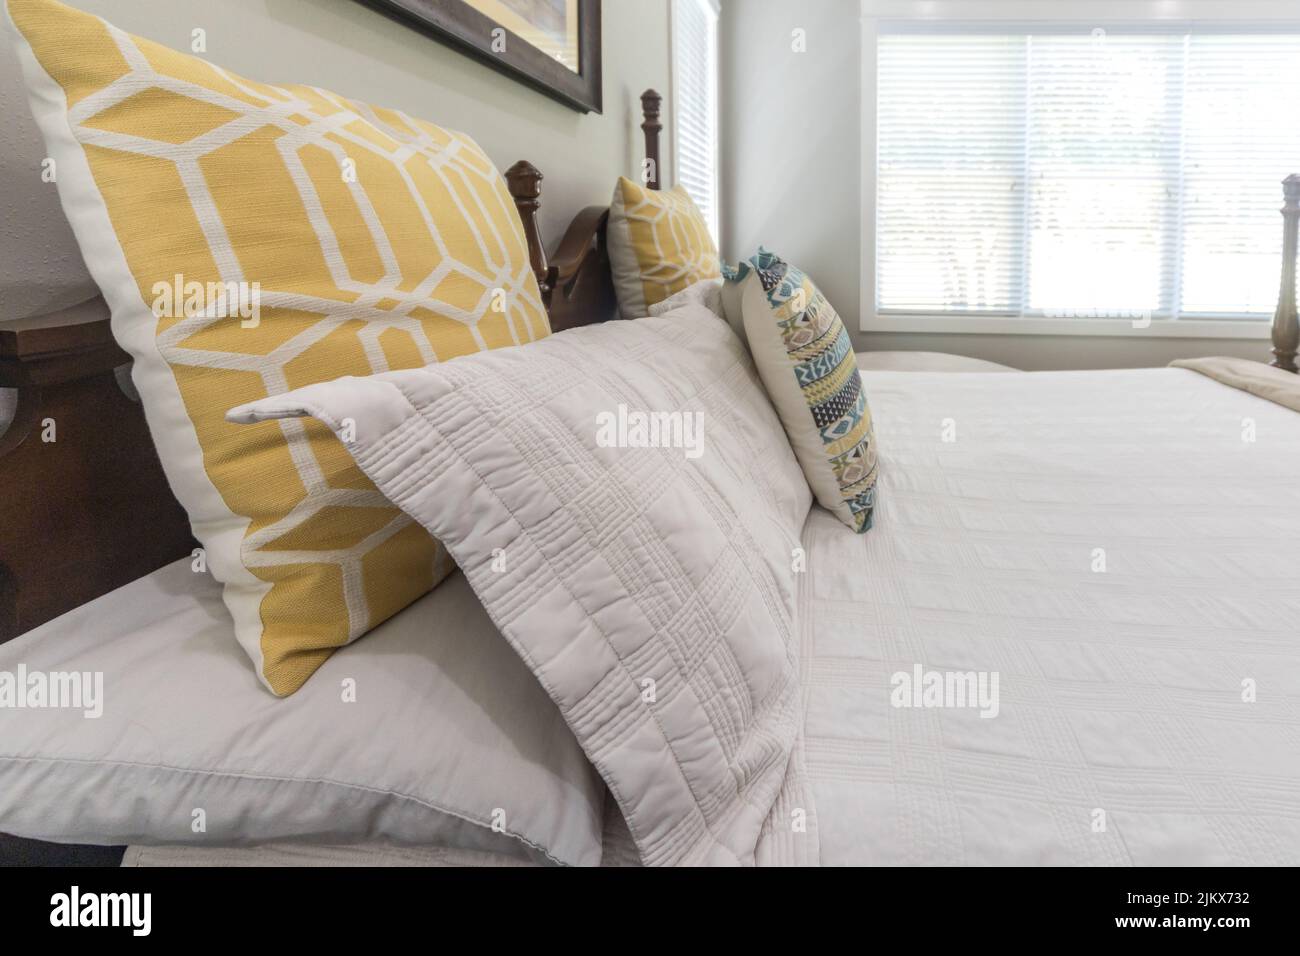 Dekorative Kissen auf einem großen Bett in einem hellen und luftigen Hauptschlafzimmer Stockfoto